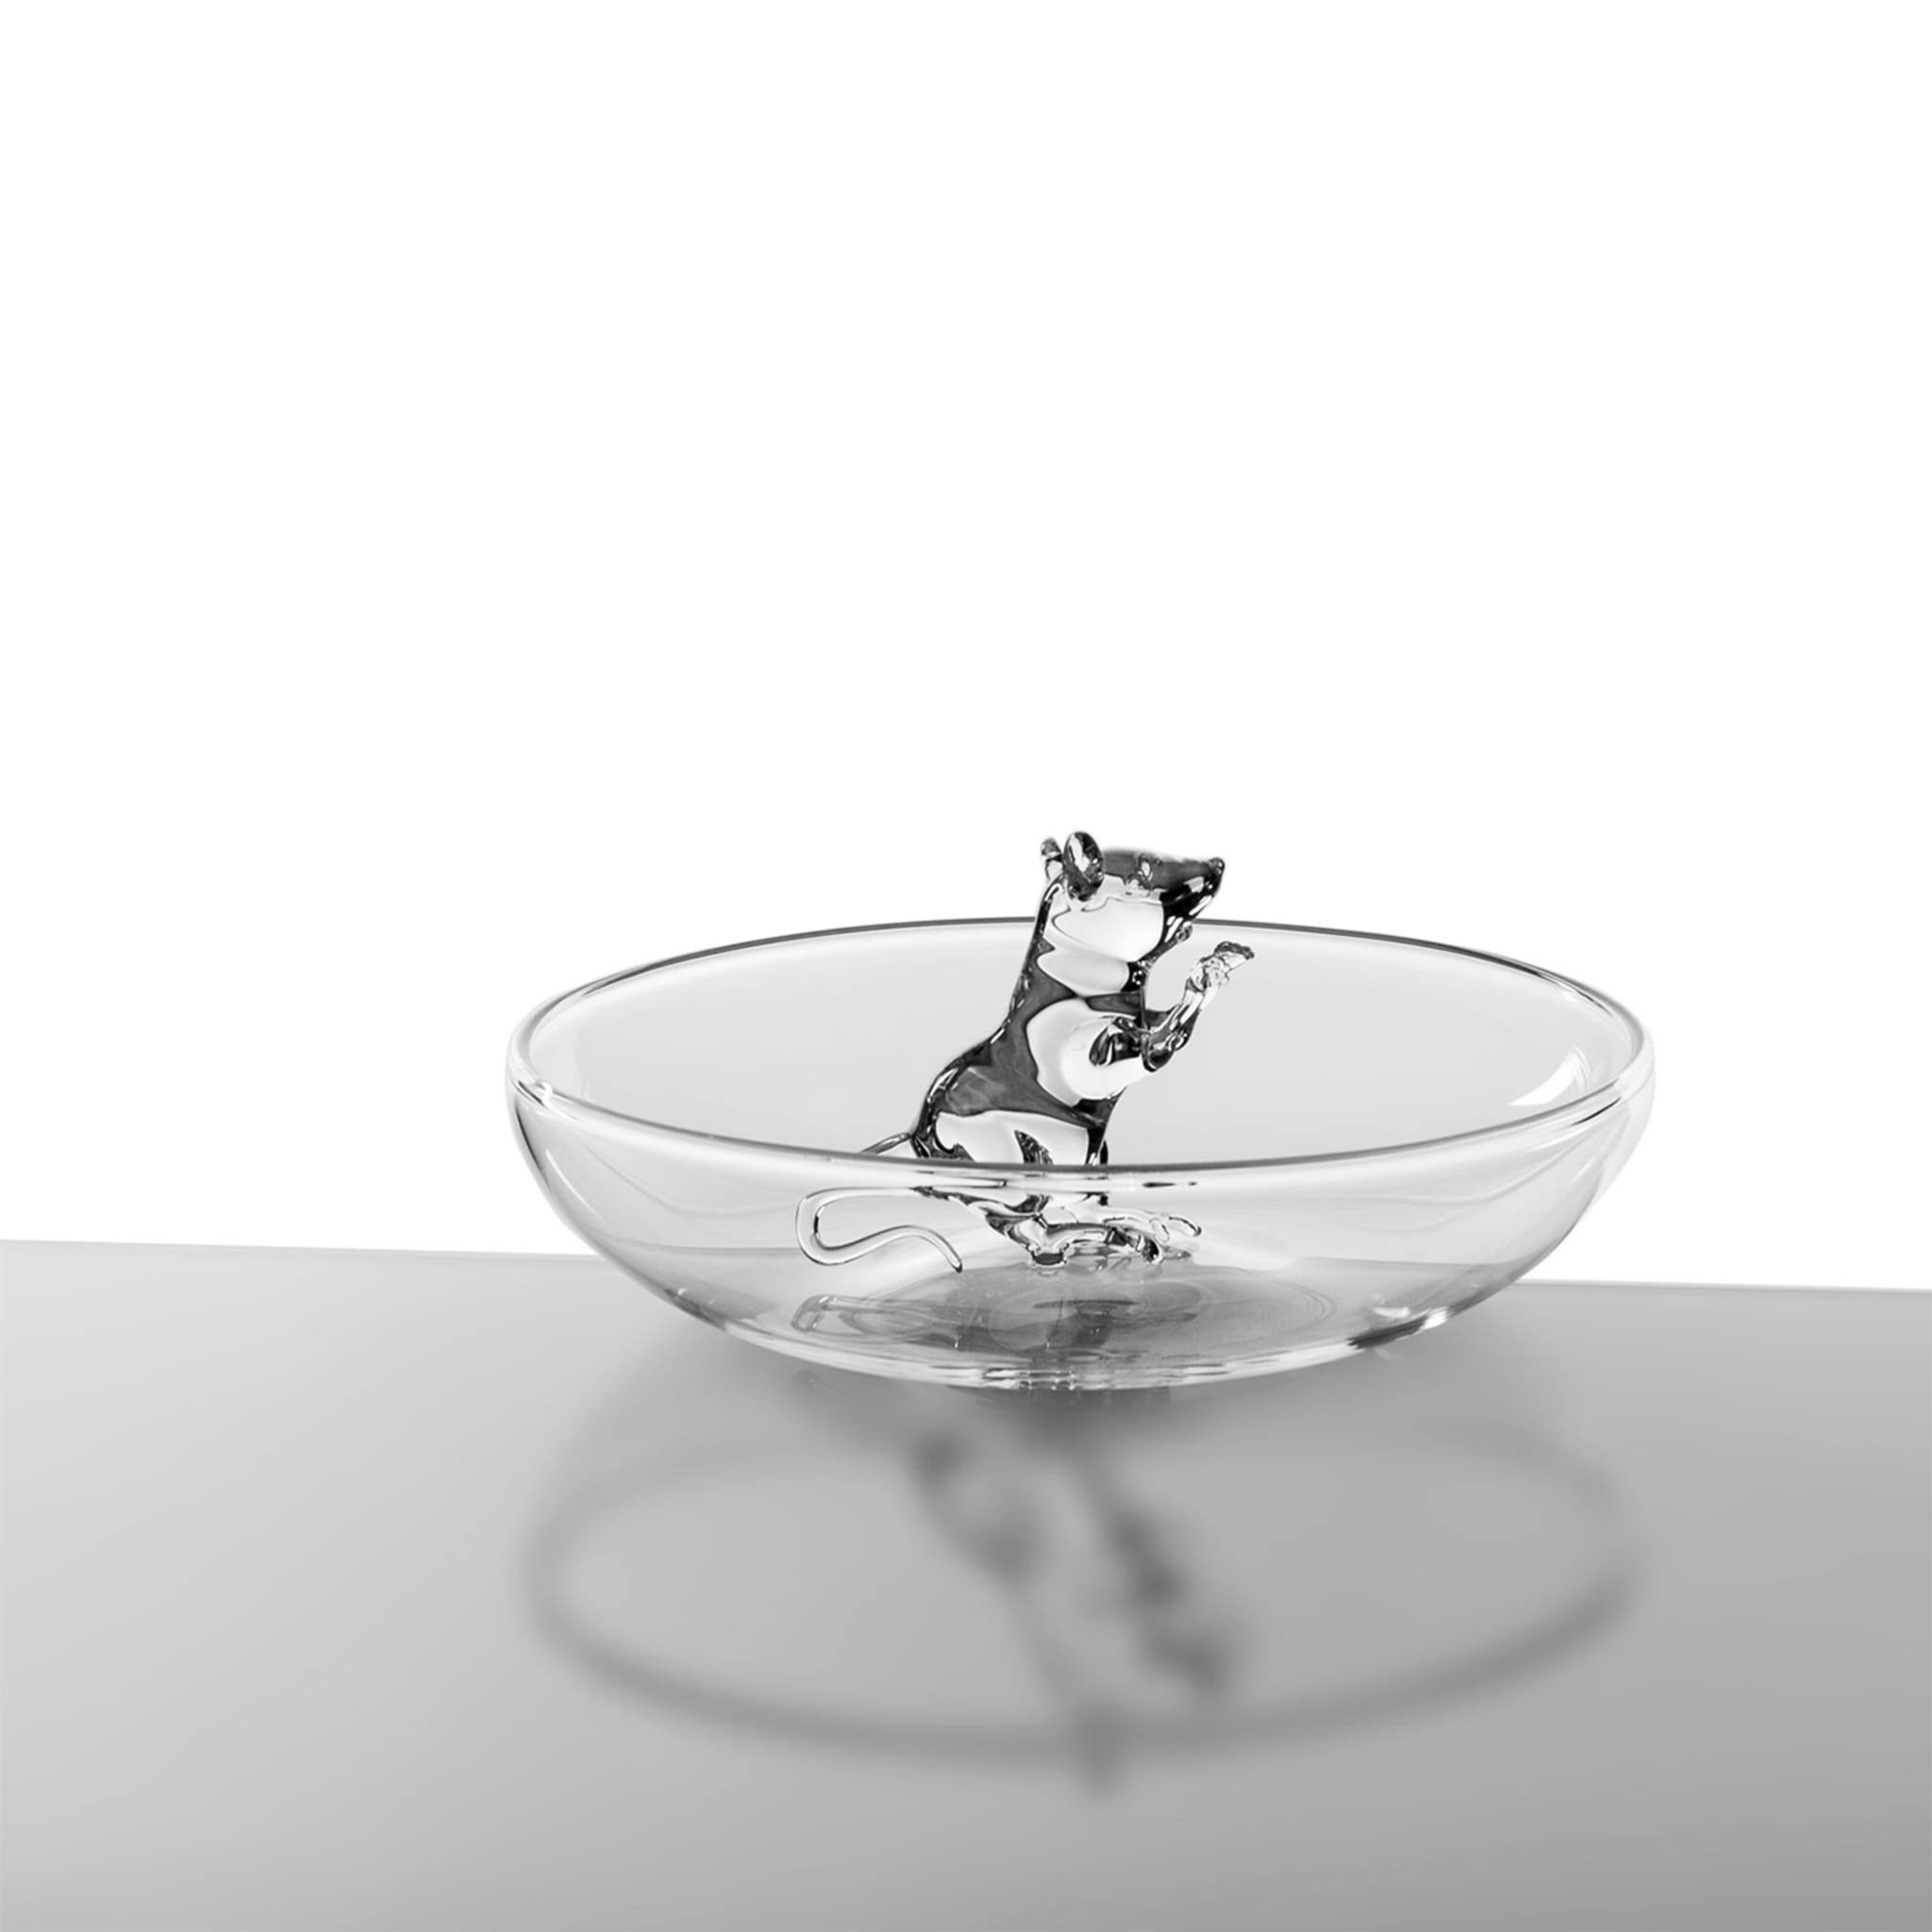 Little Mouse #2 Decorative Bowl - Alternative view 3